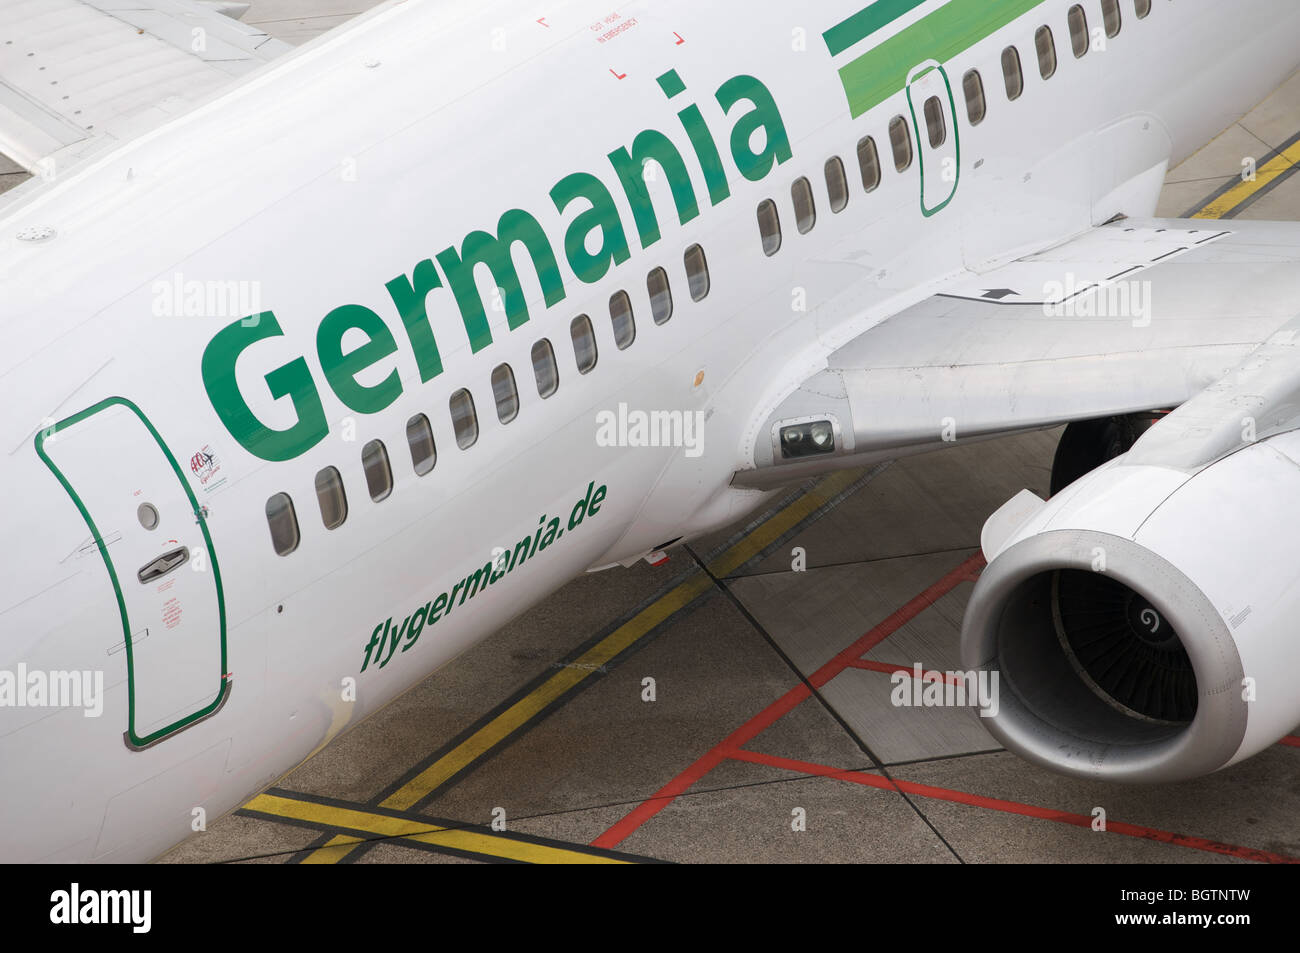 Boeing 737 avion de Germania de passagers, l'aéroport international de Düsseldorf, Allemagne. Banque D'Images